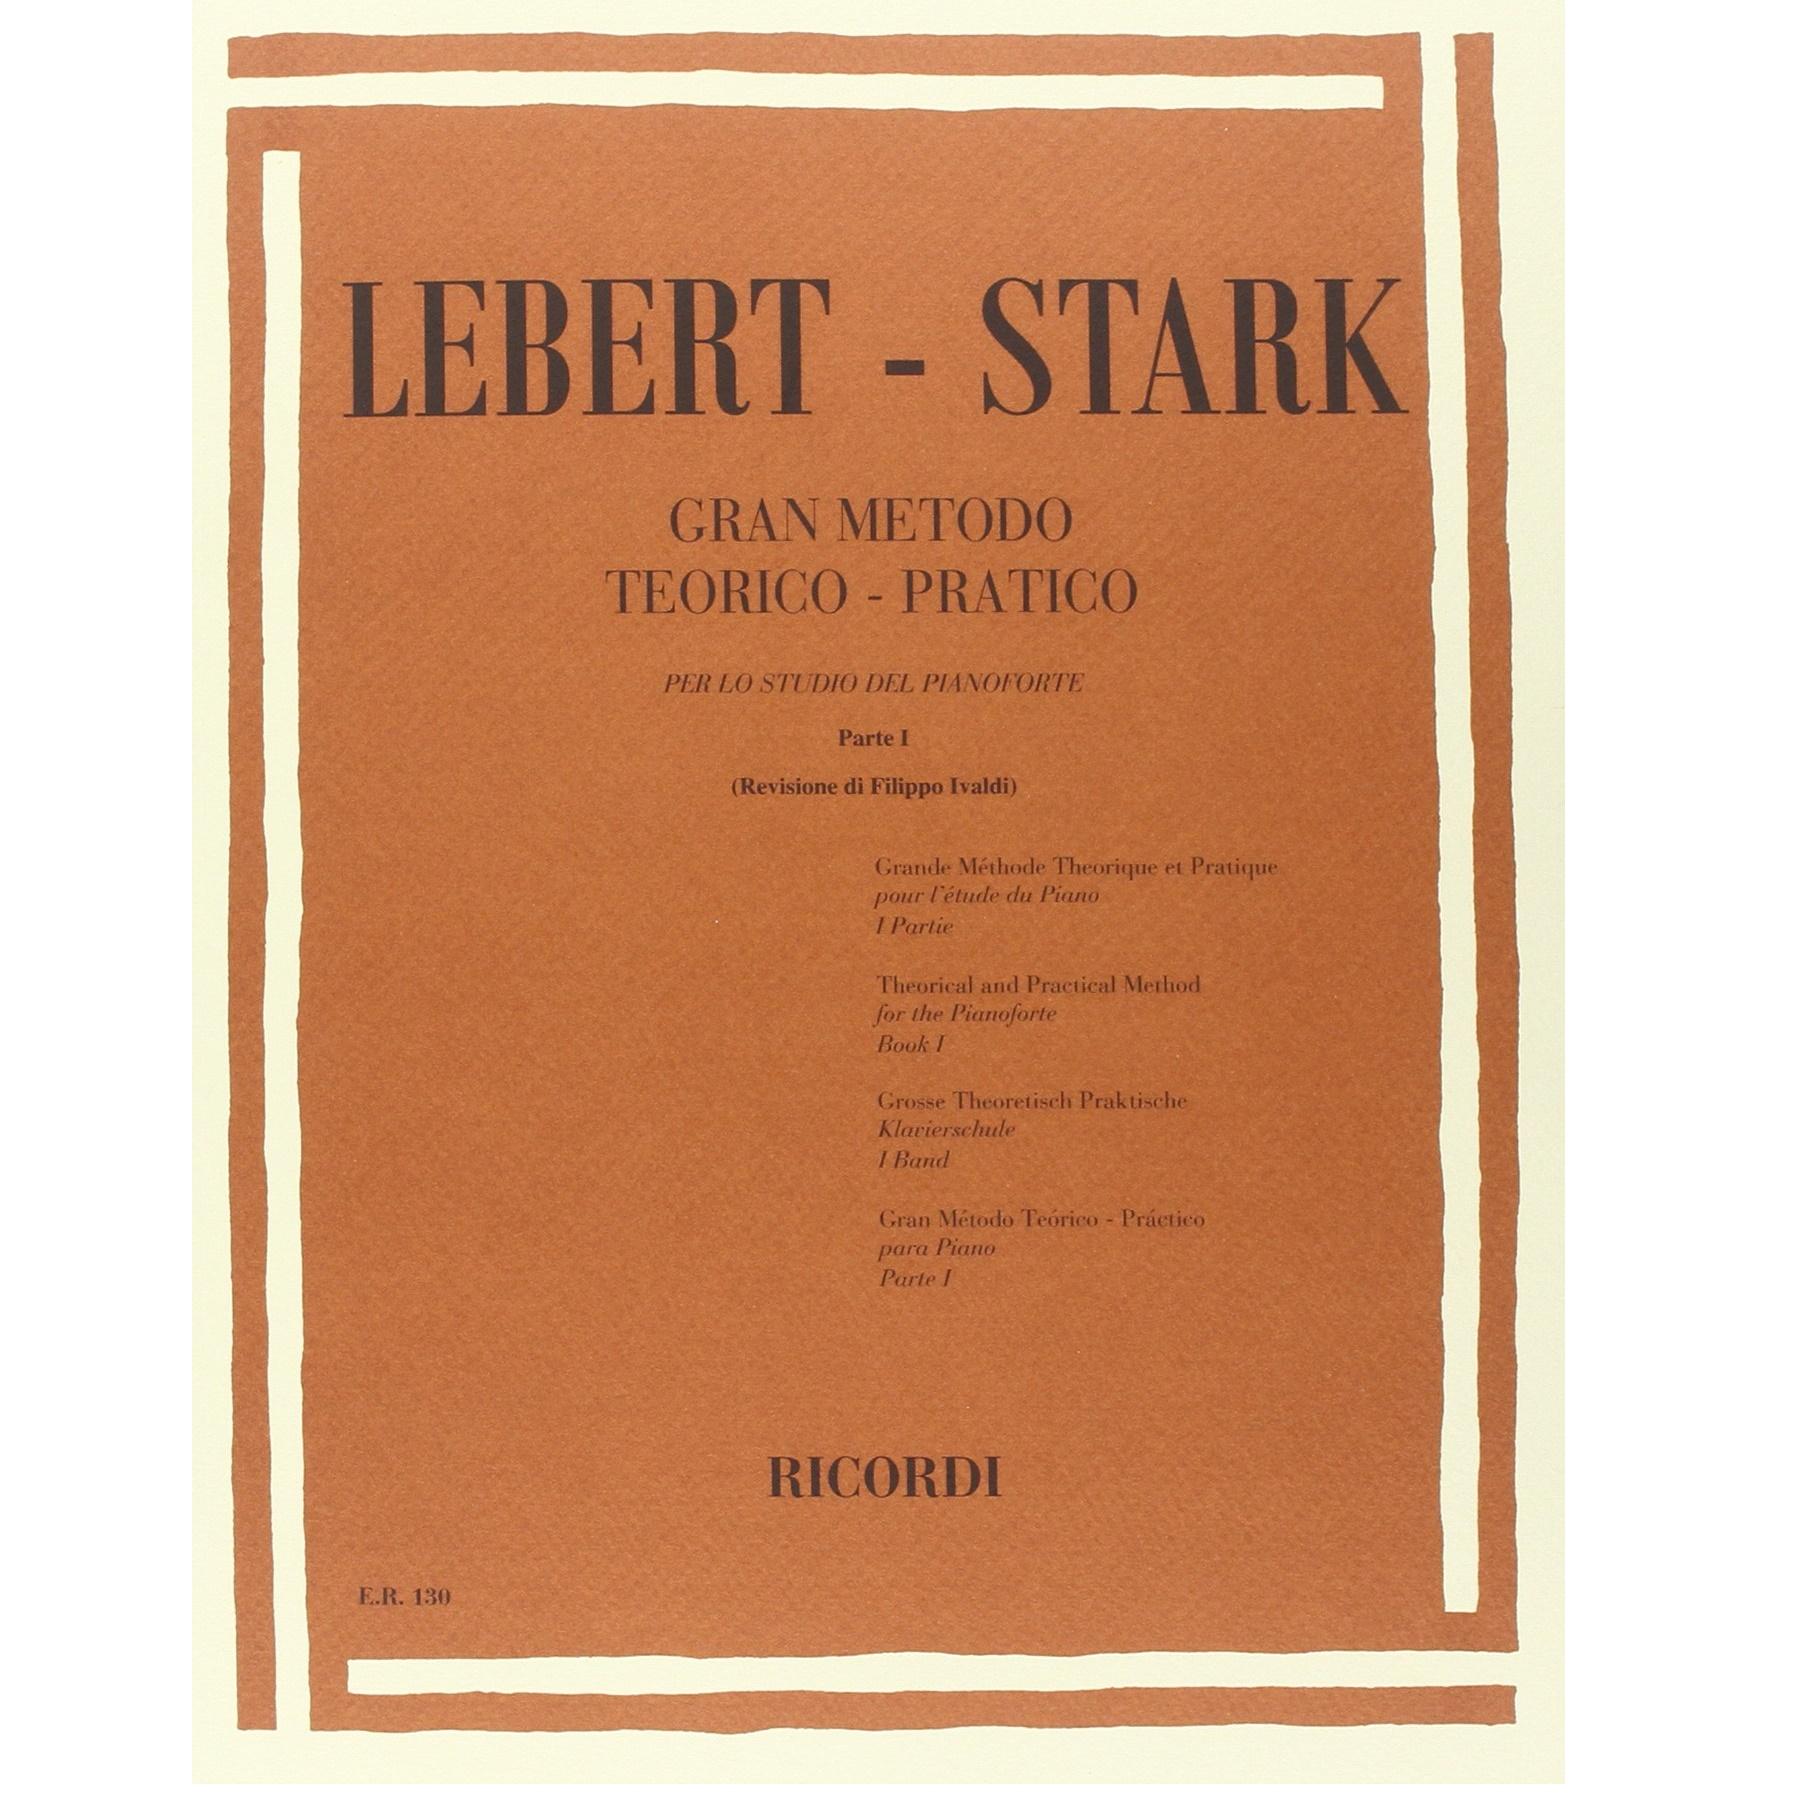 Lebert - Stark Gran Metodo Teorico - Pratico per lo studio del pianoforte Parte I (Ivaldi) - Ricordi 